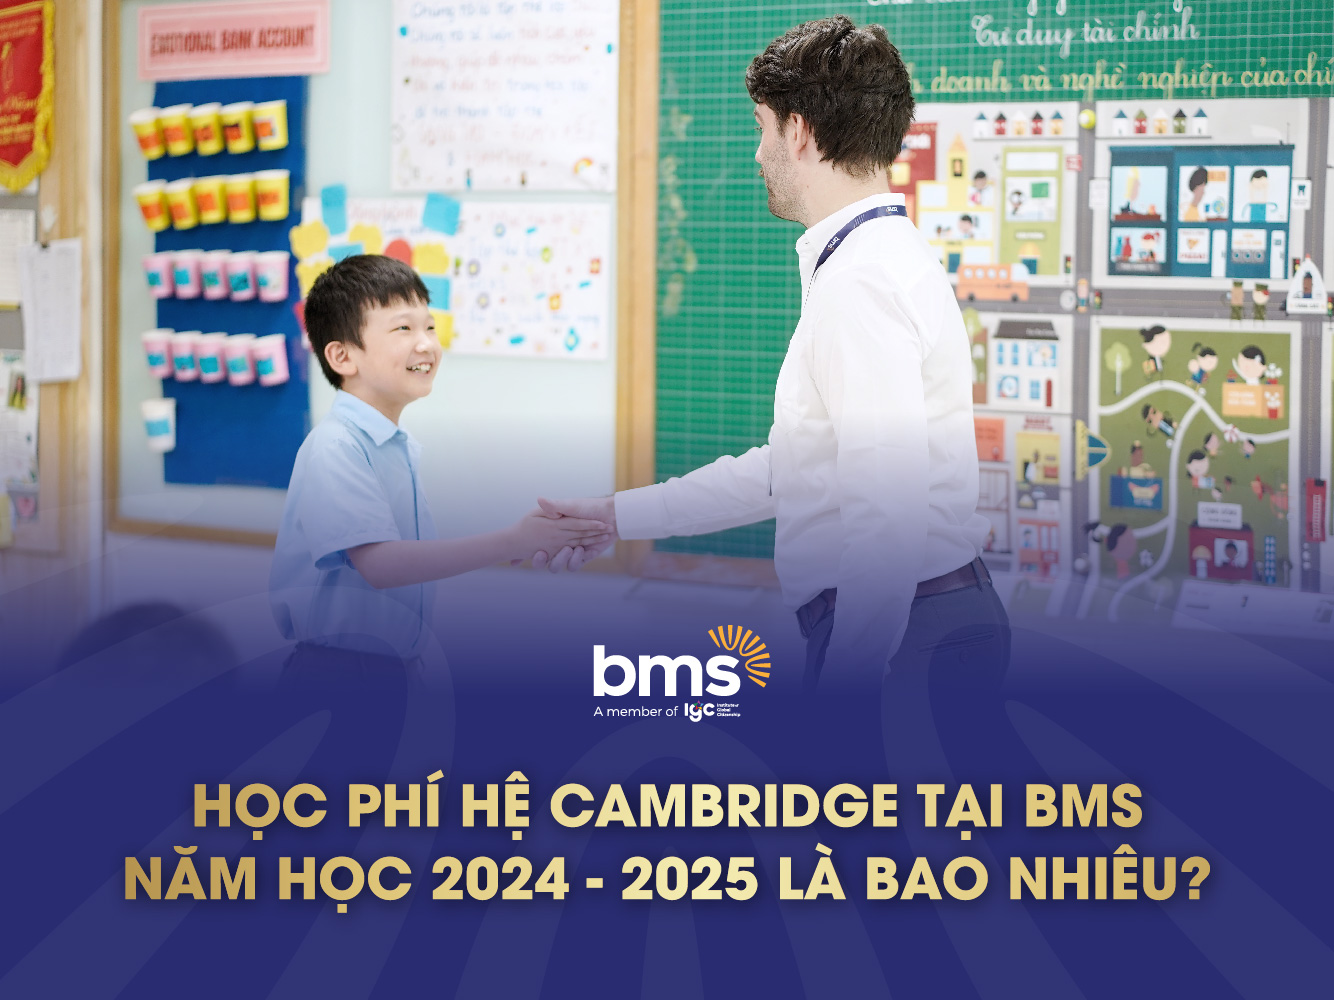 Học phí chương trình Cambridge tại BMS năm học 2024 - 2025 là bao nhiêu?